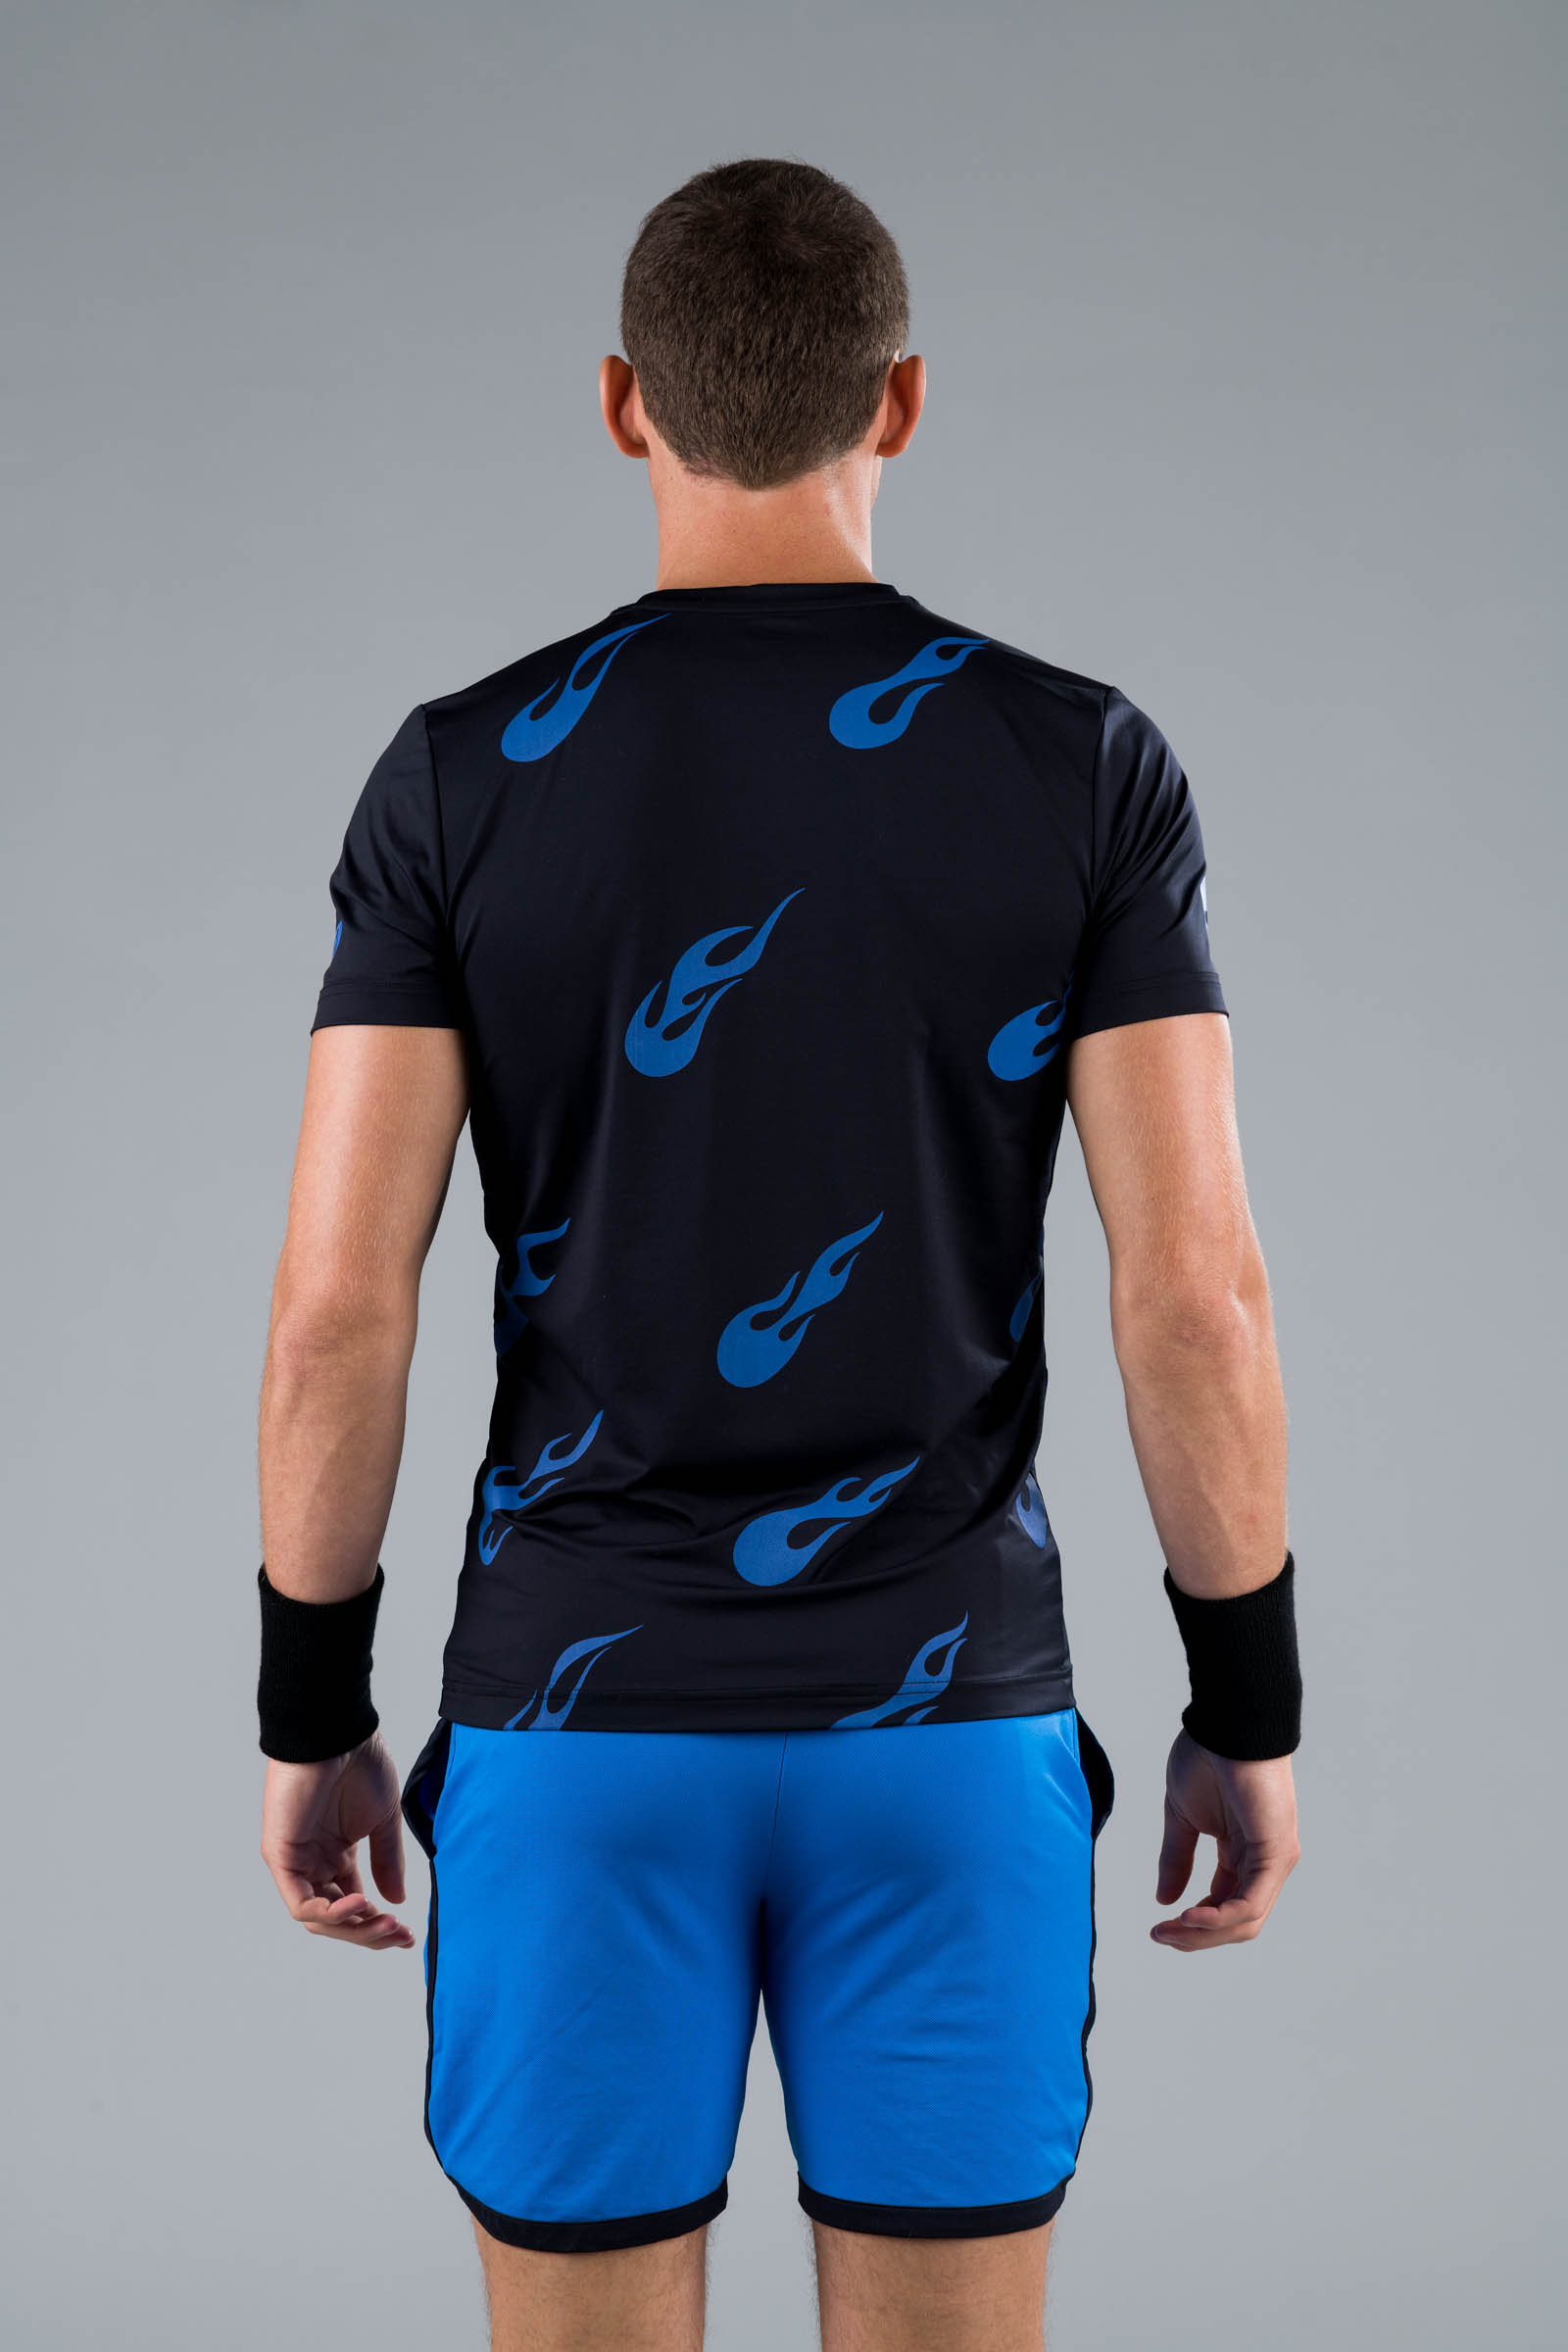 FLAMES TECH TEE - BLACK/BLUETTE - Abbigliamento sportivo | Hydrogen